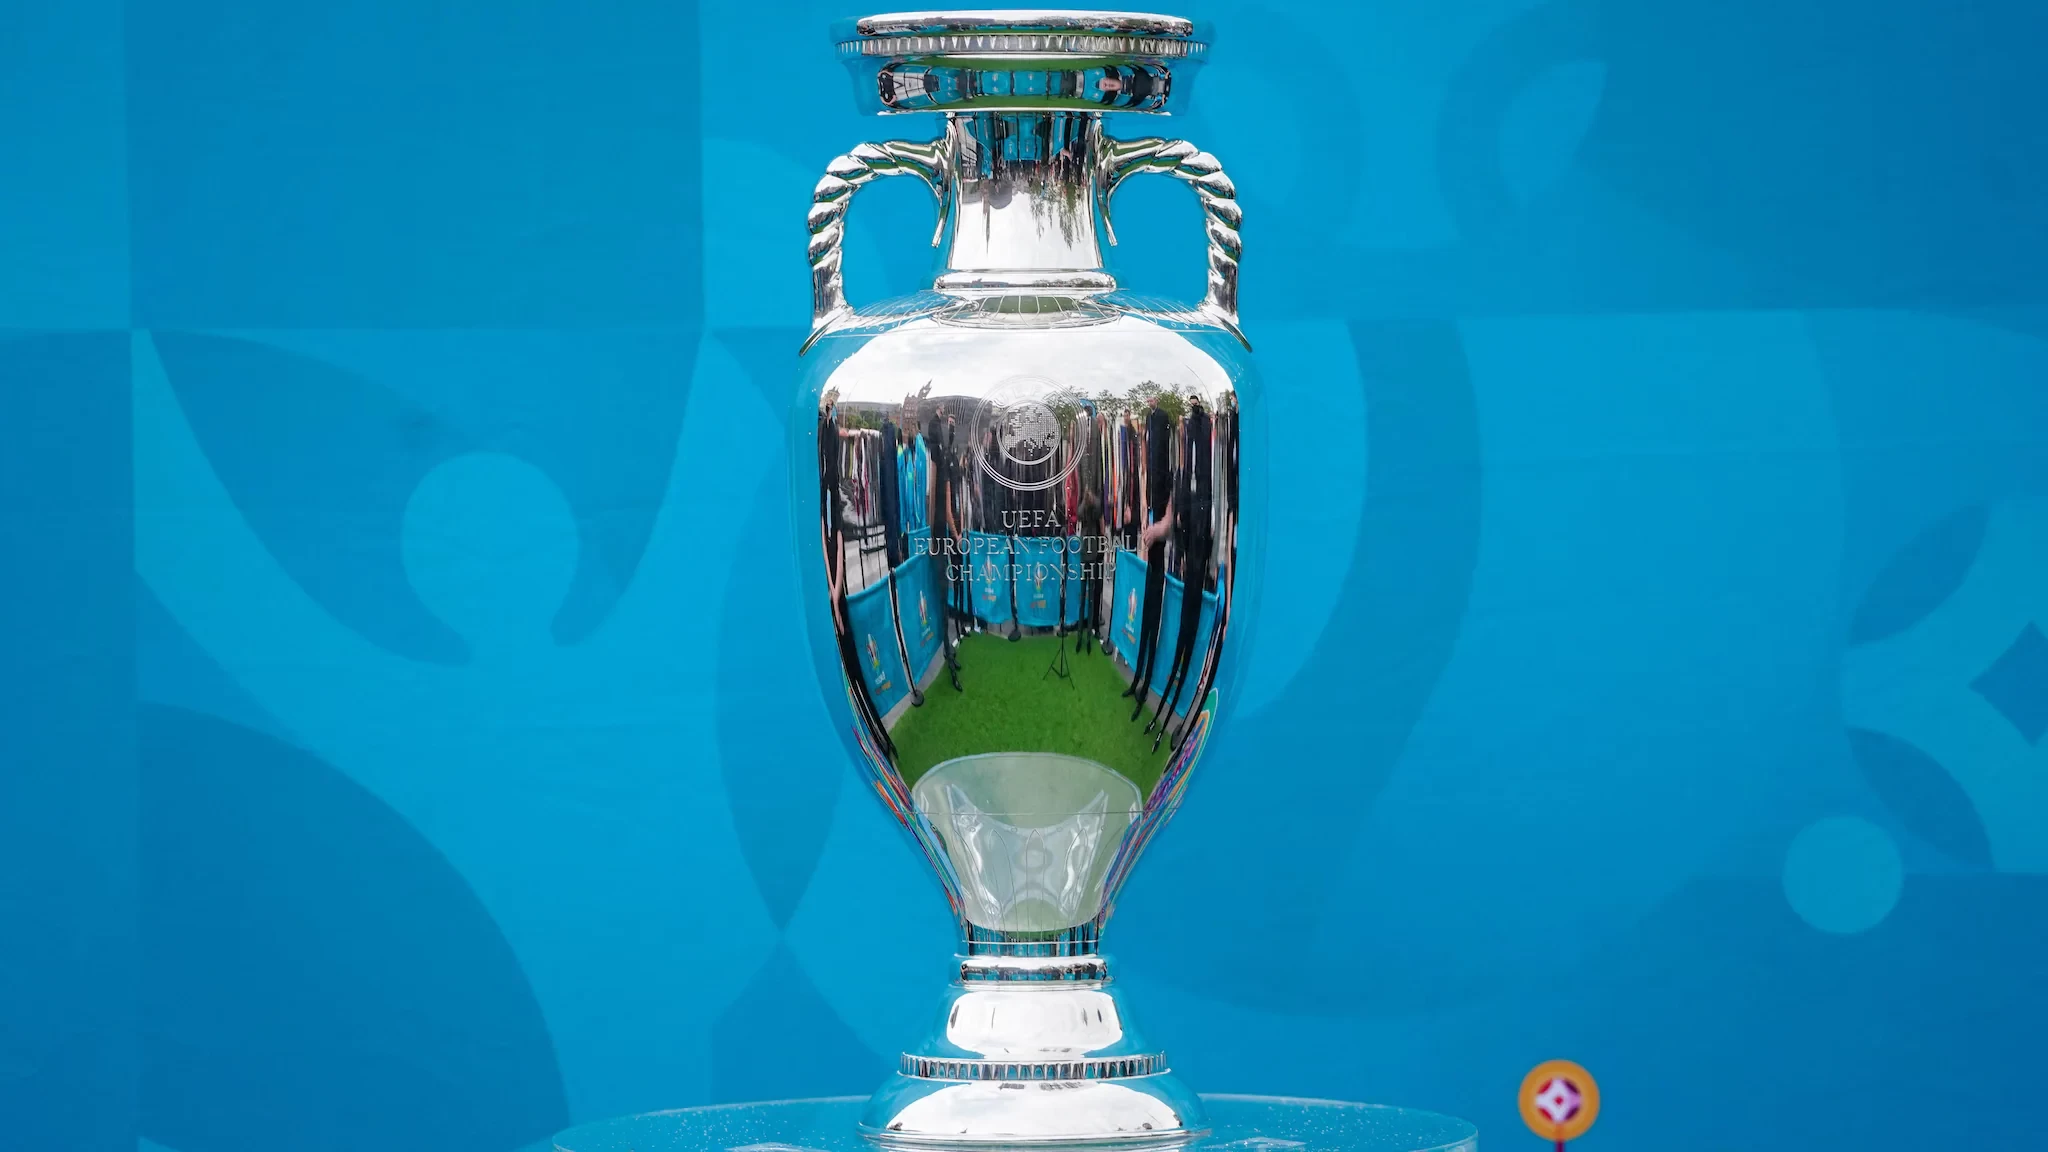 Piala euro